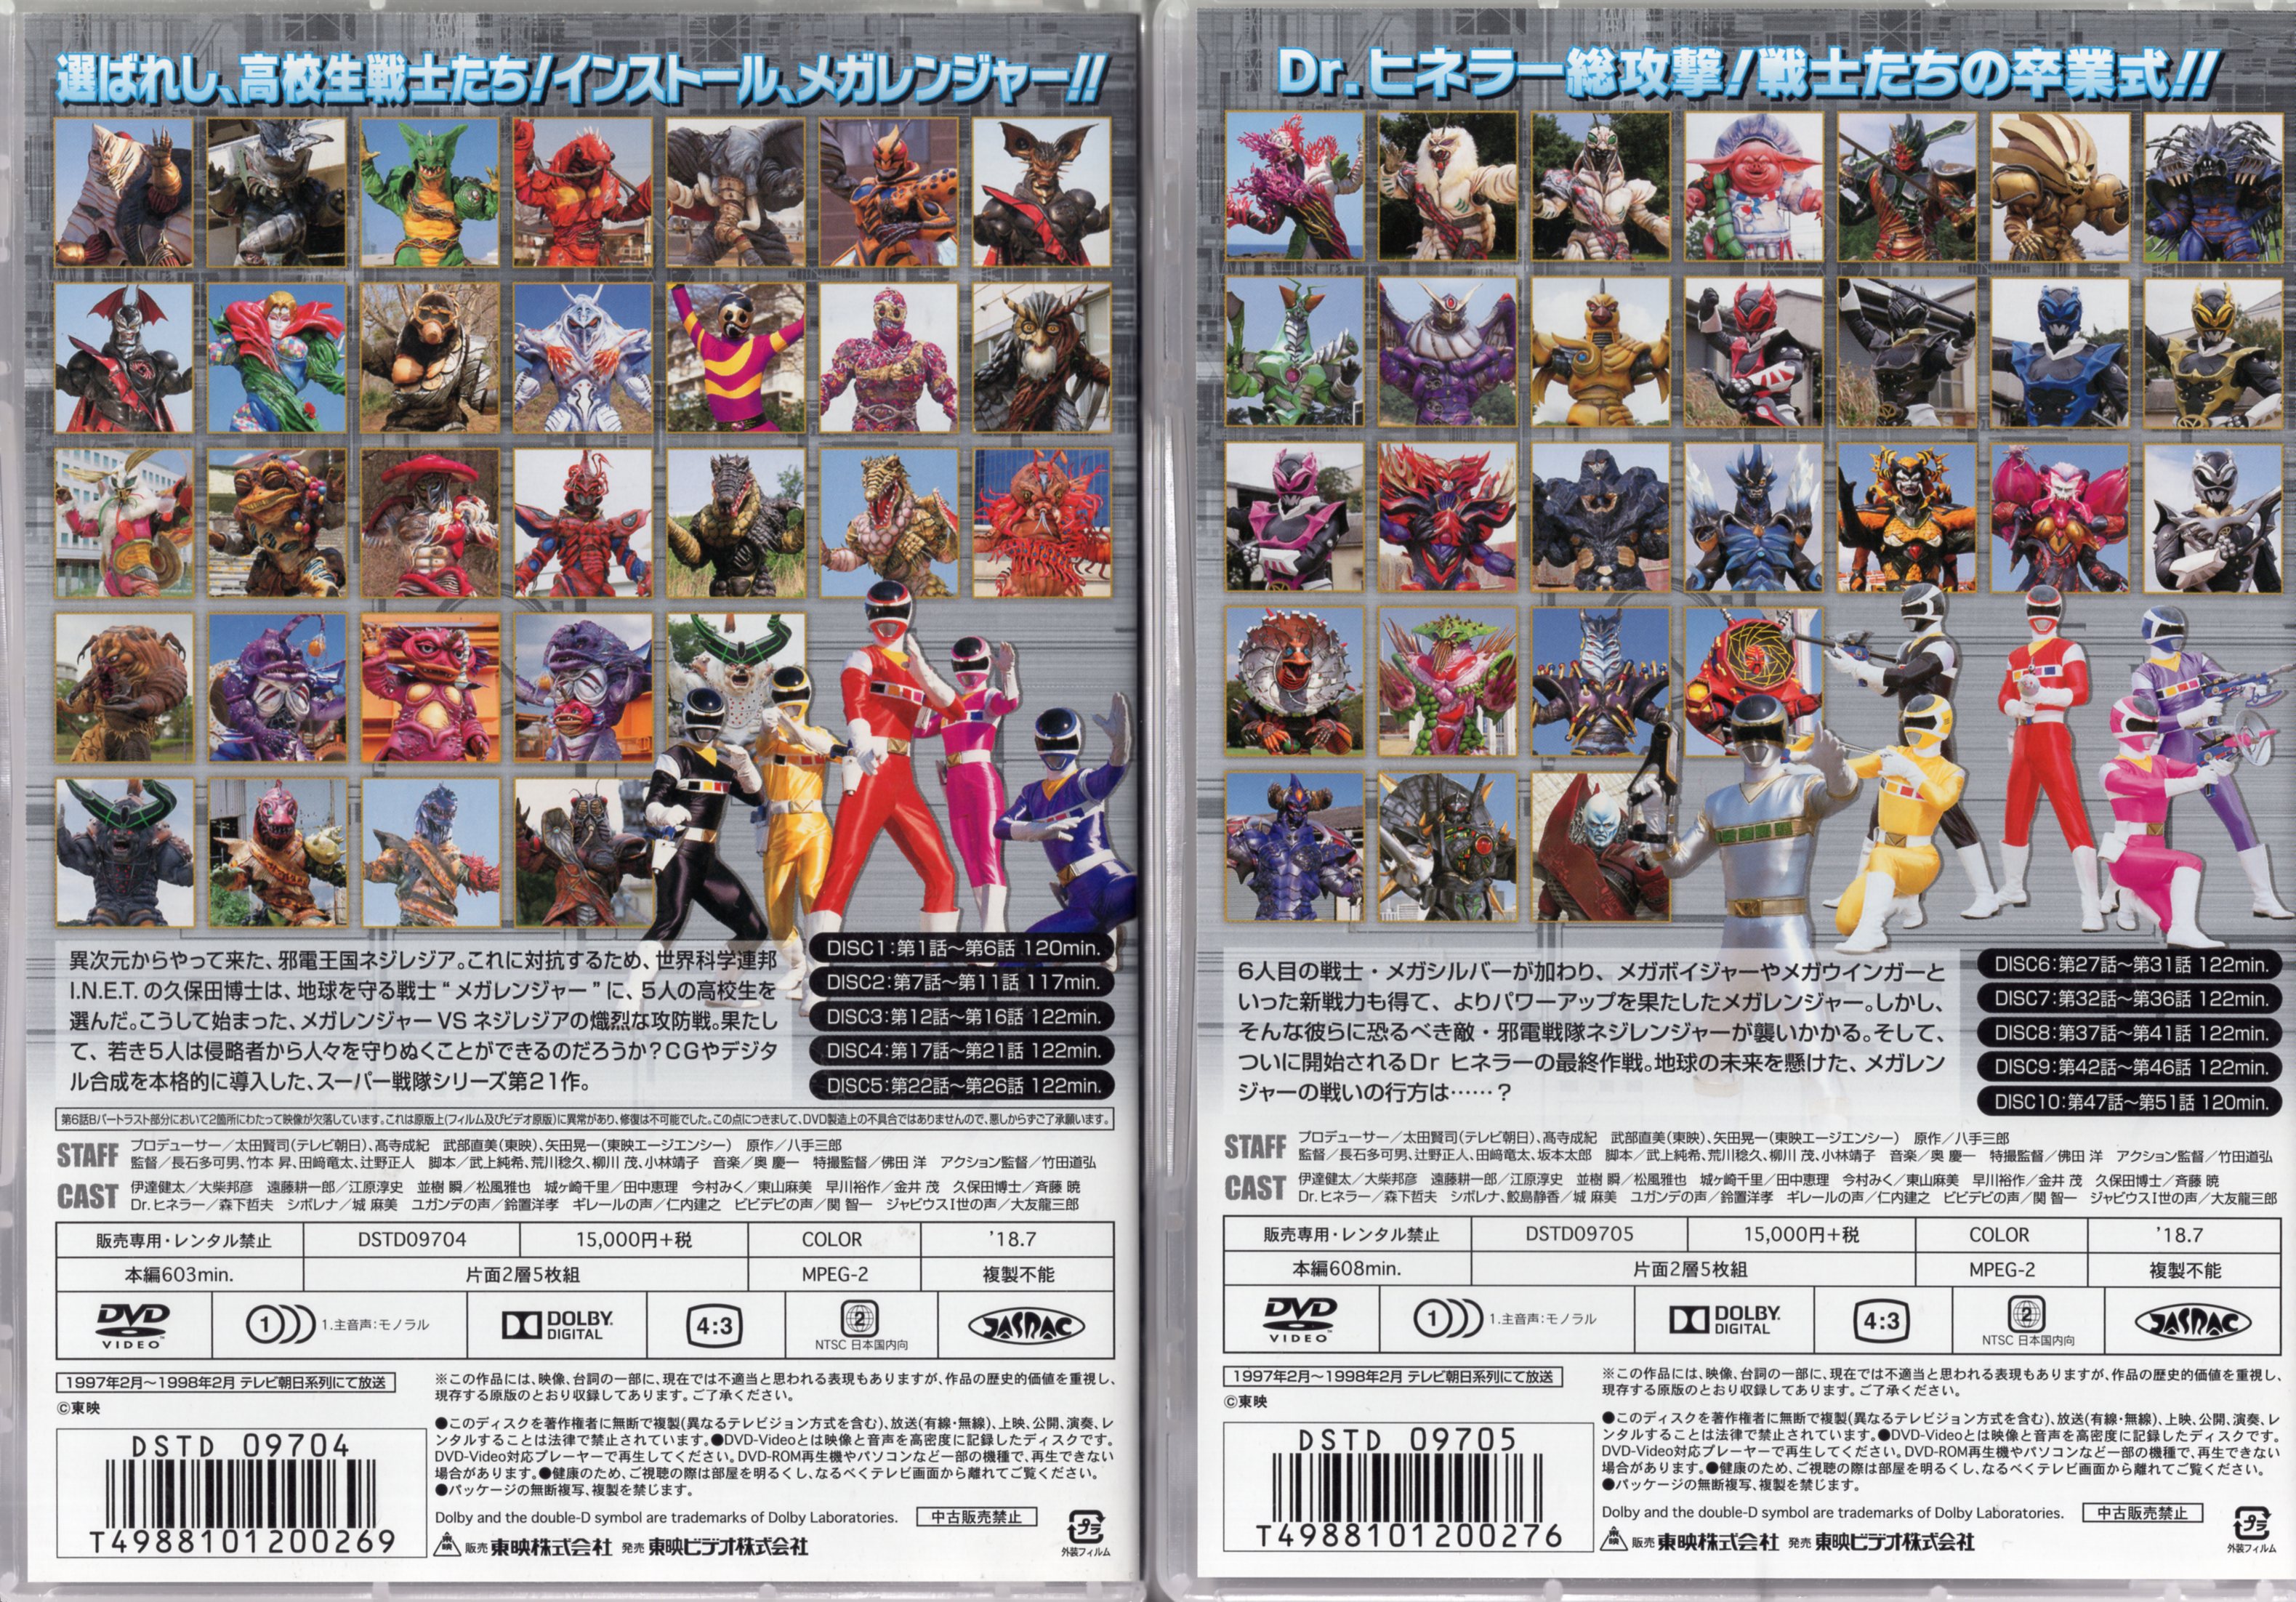 国内盤DVD] 未来戦隊タイムレンジャー DVD-COLLECTION VOL.2[5枚組